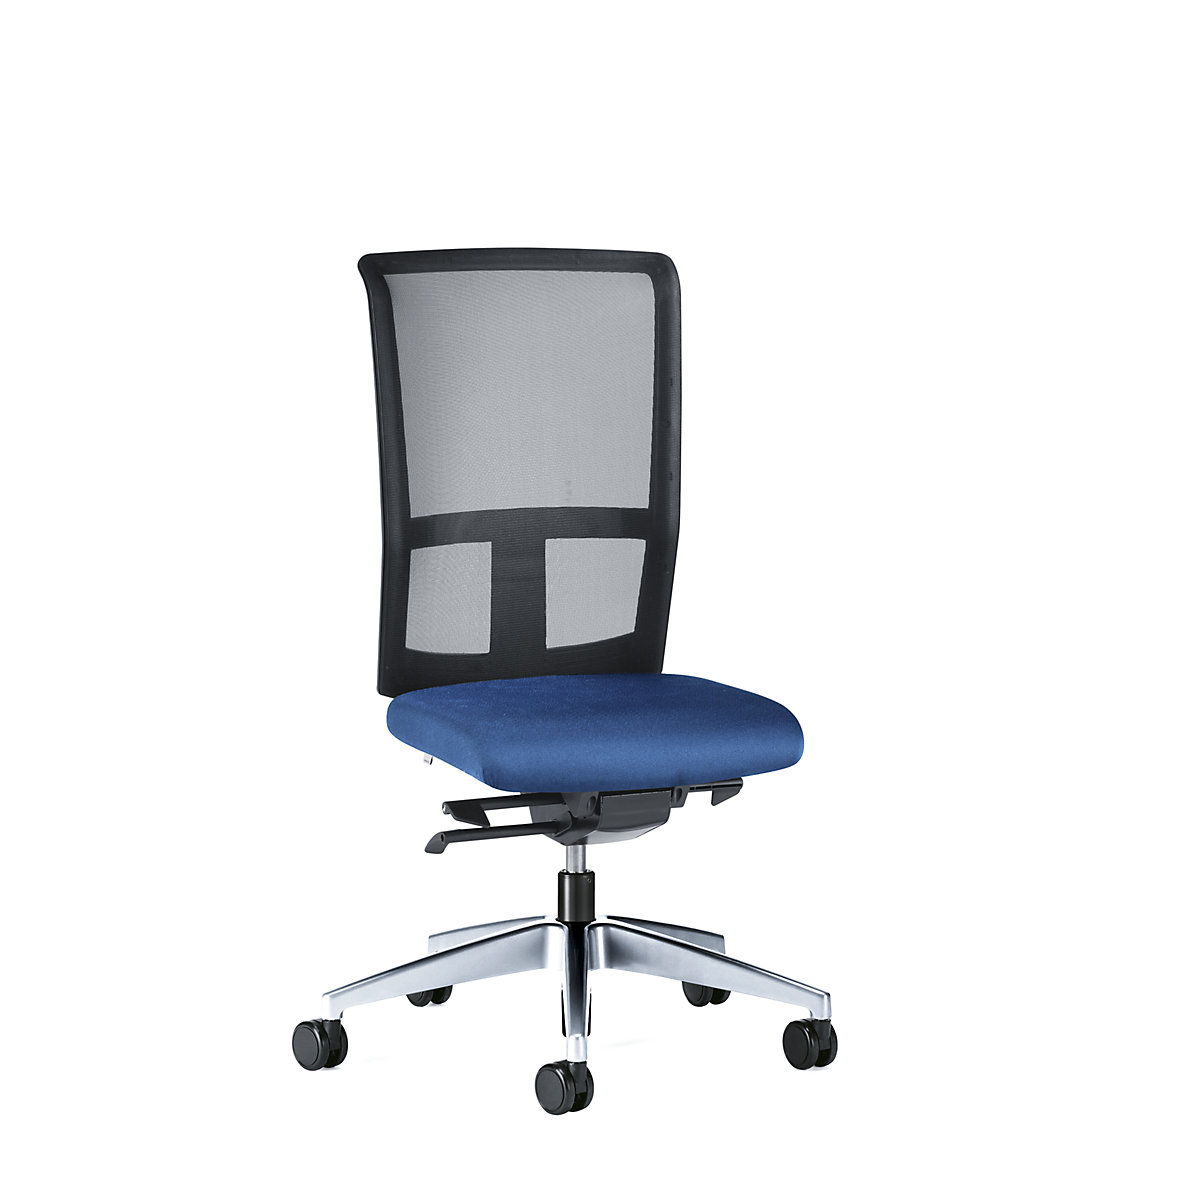 Bürodrehstuhl GOAL AIR, Rückenlehnenhöhe 545 mm interstuhl, Gestell poliert, mit weichen Rollen, enzianblau, Sitztiefe 410 mm-1